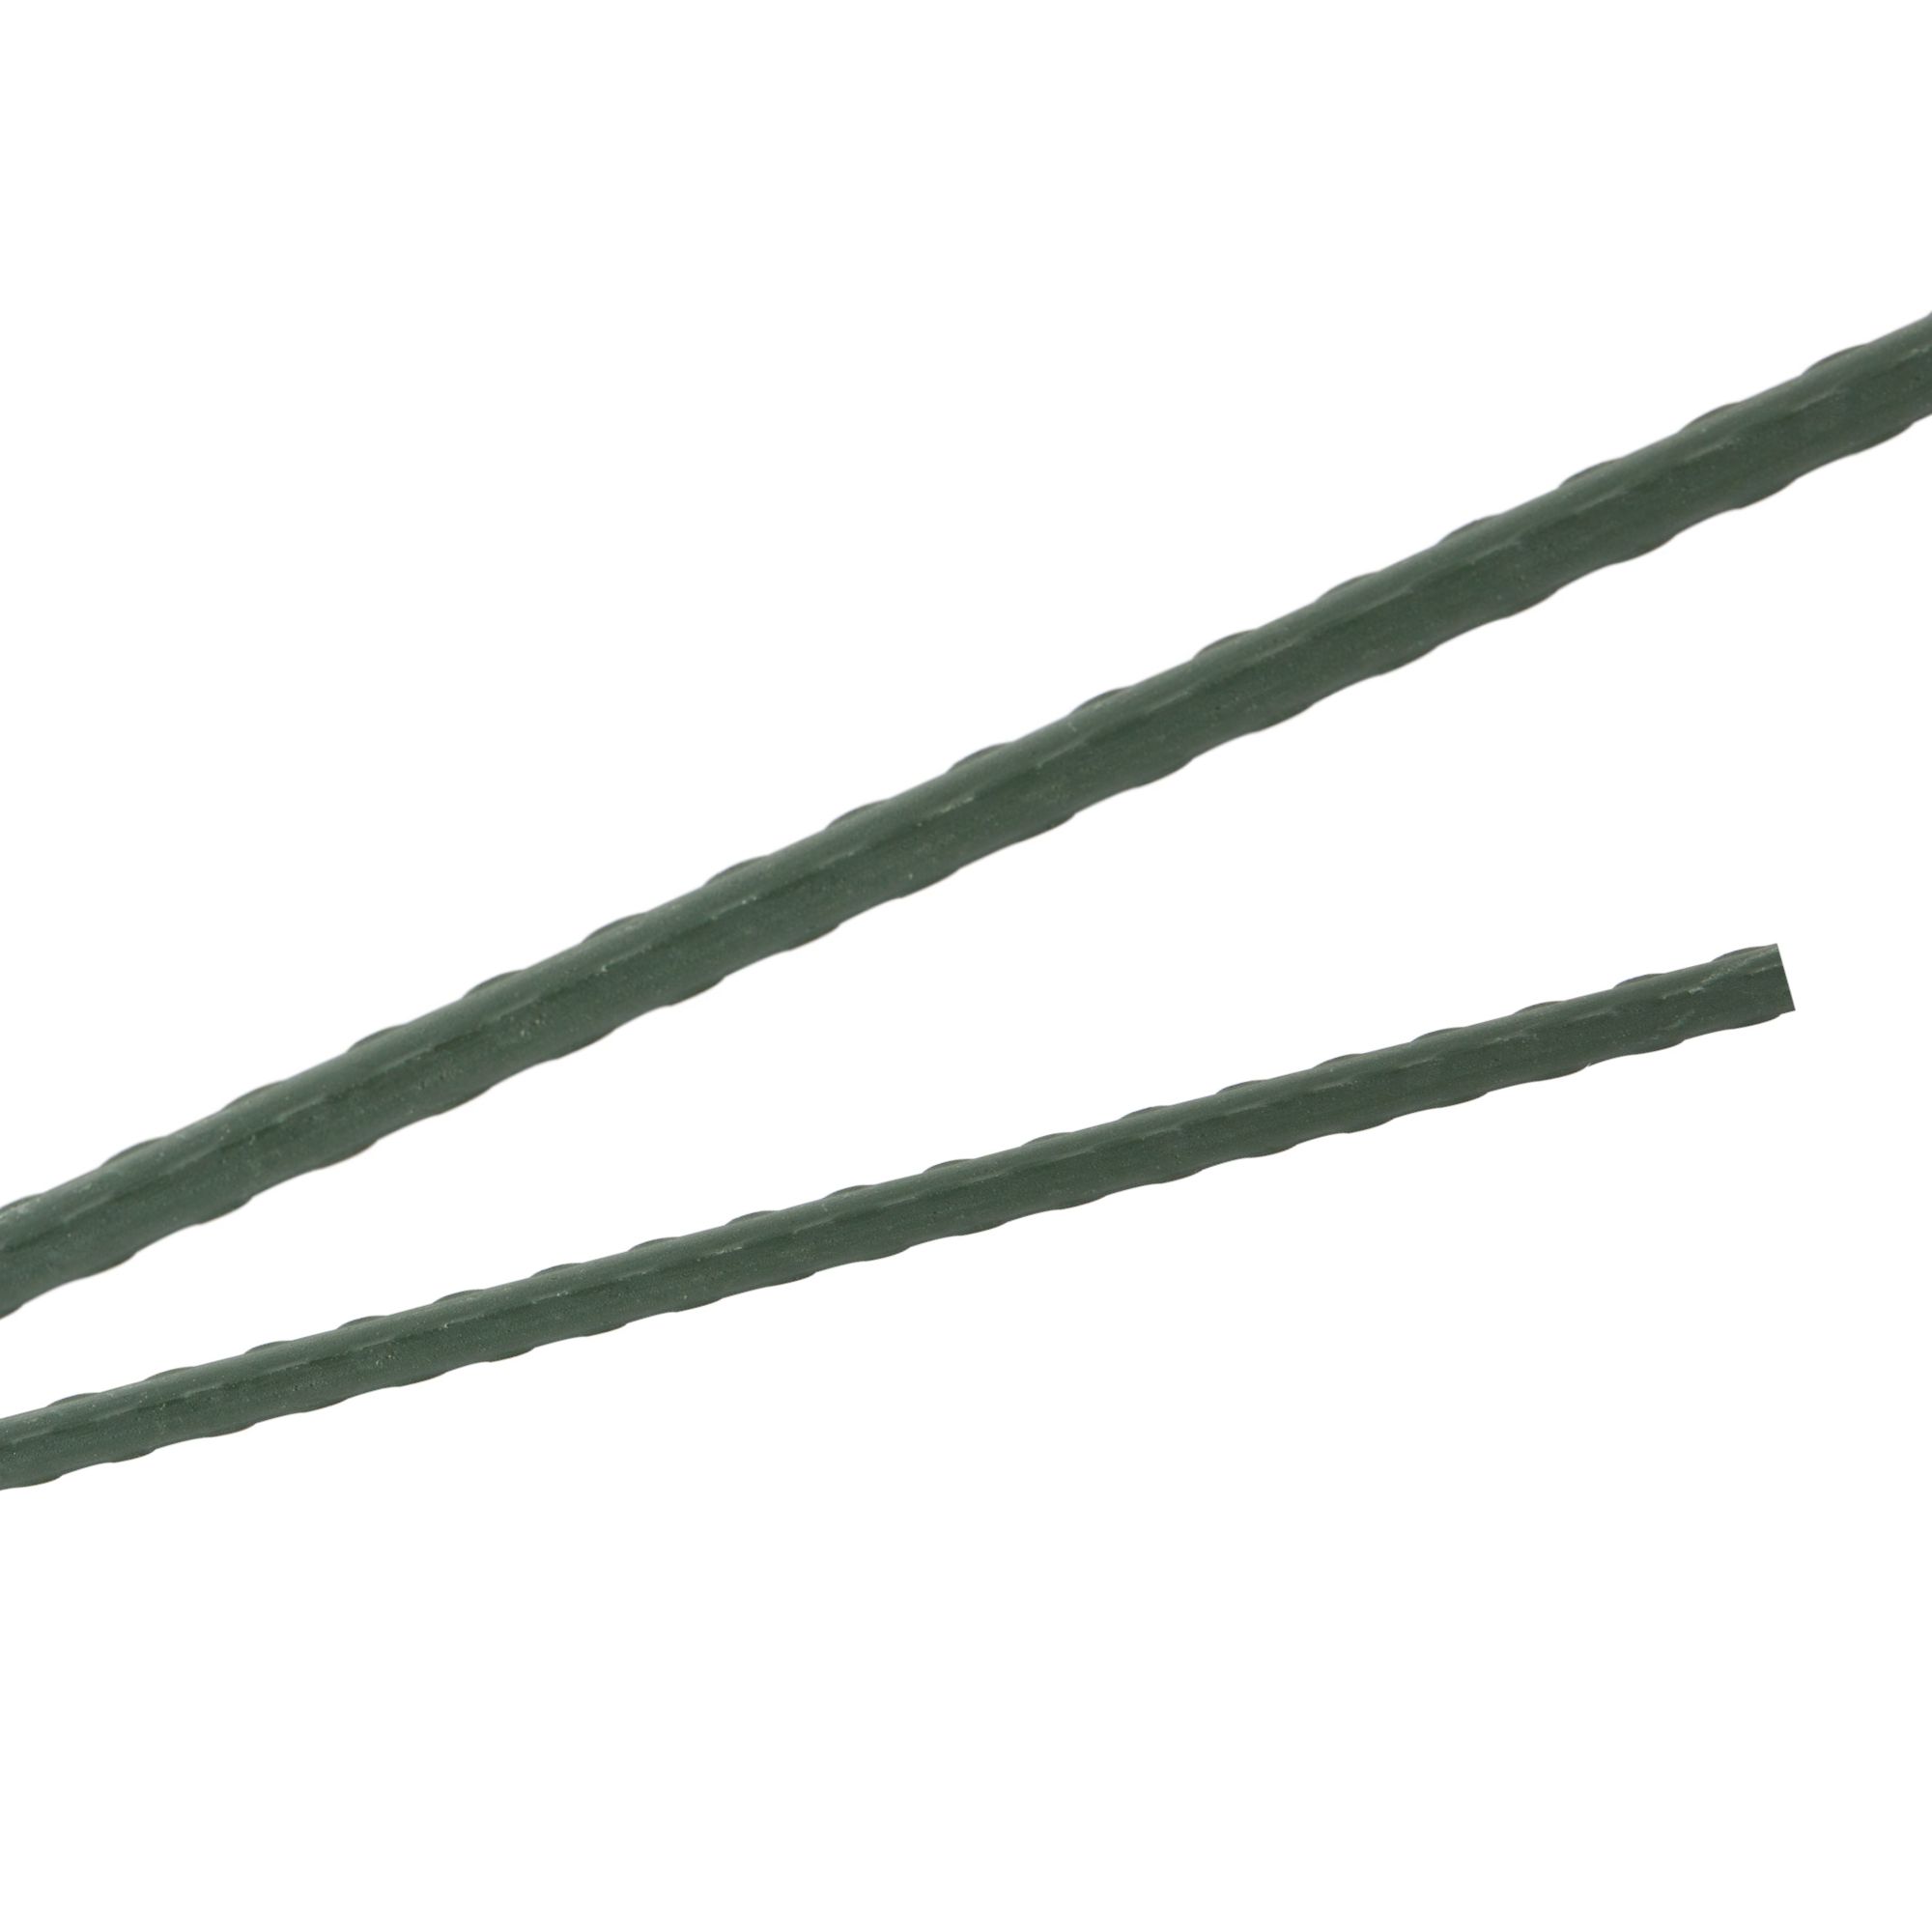 Tyč podpěrná, 20mm, 150cm, kov+PVC, zelená 0.280000 Kg GIGA Sklad20 211769 25